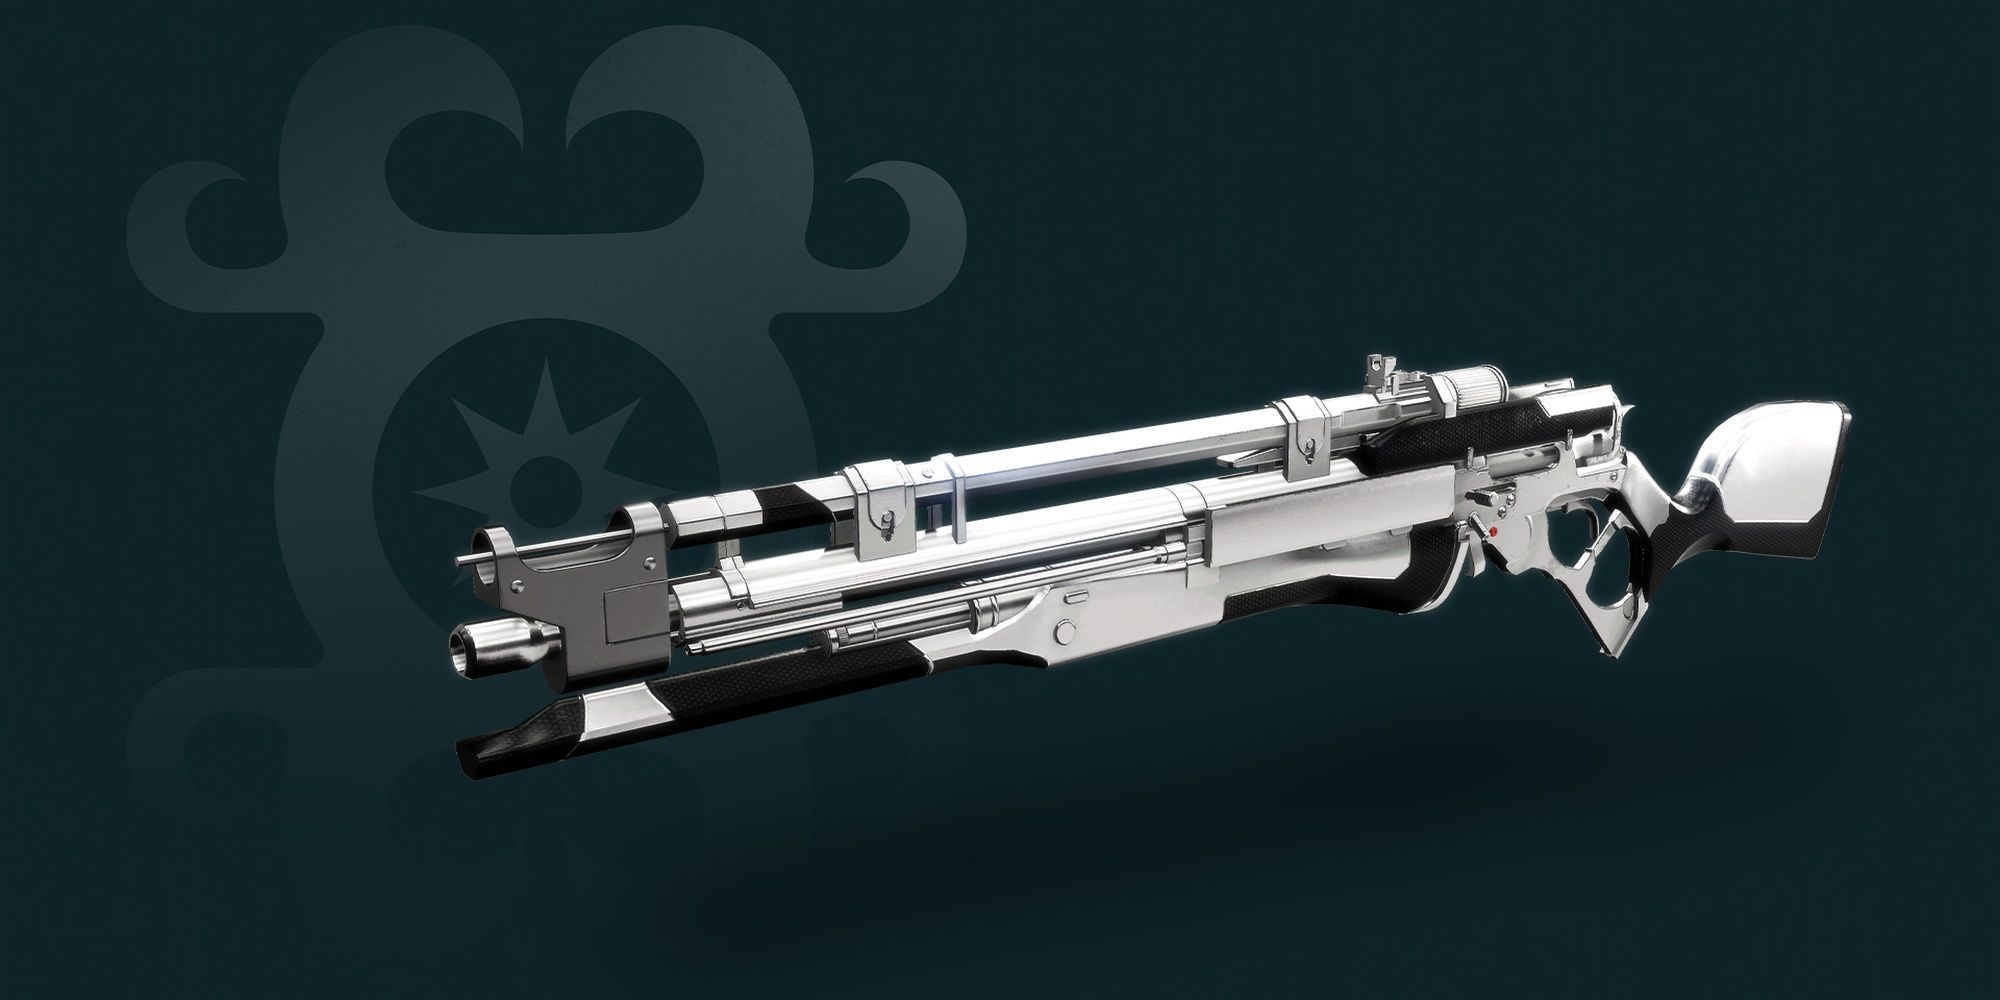 Best Destiny 2 Gambit weapons: Tier List and Triumphs